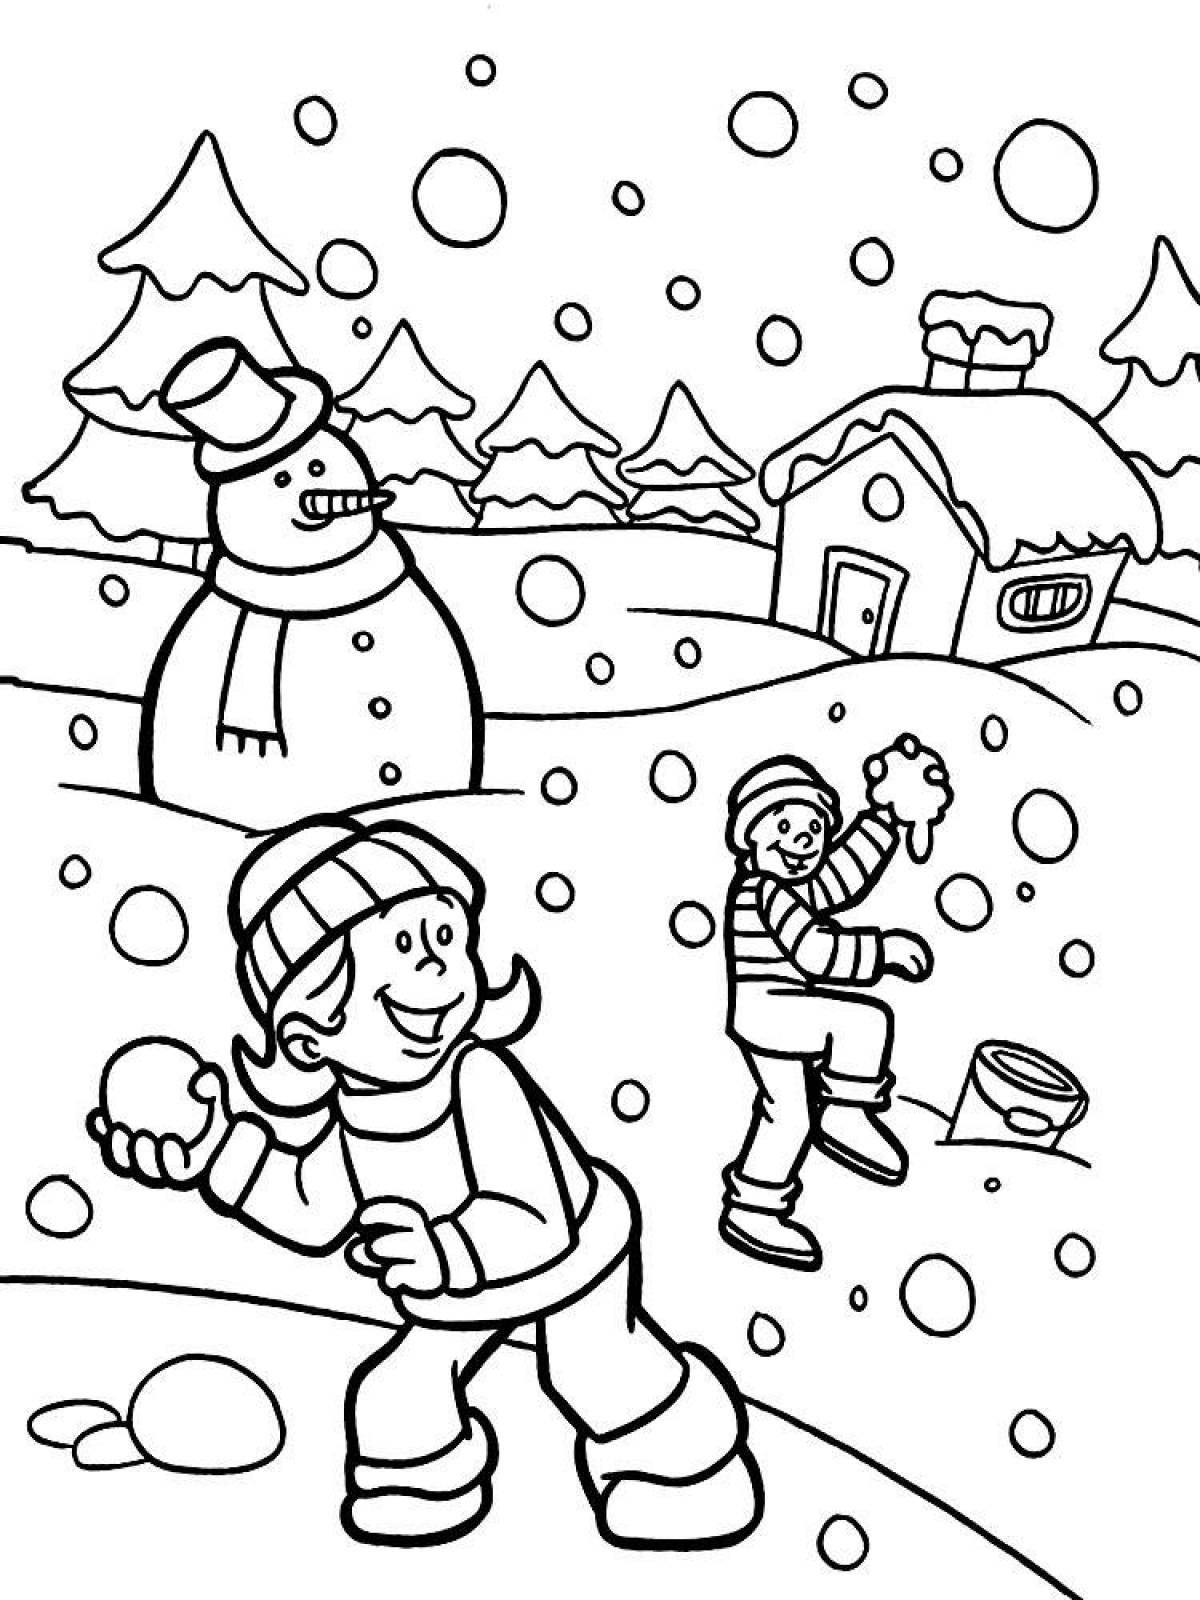 2. Короткие стихи про Новый год, Деда мороза и ёлочку для детей 3-4 лет